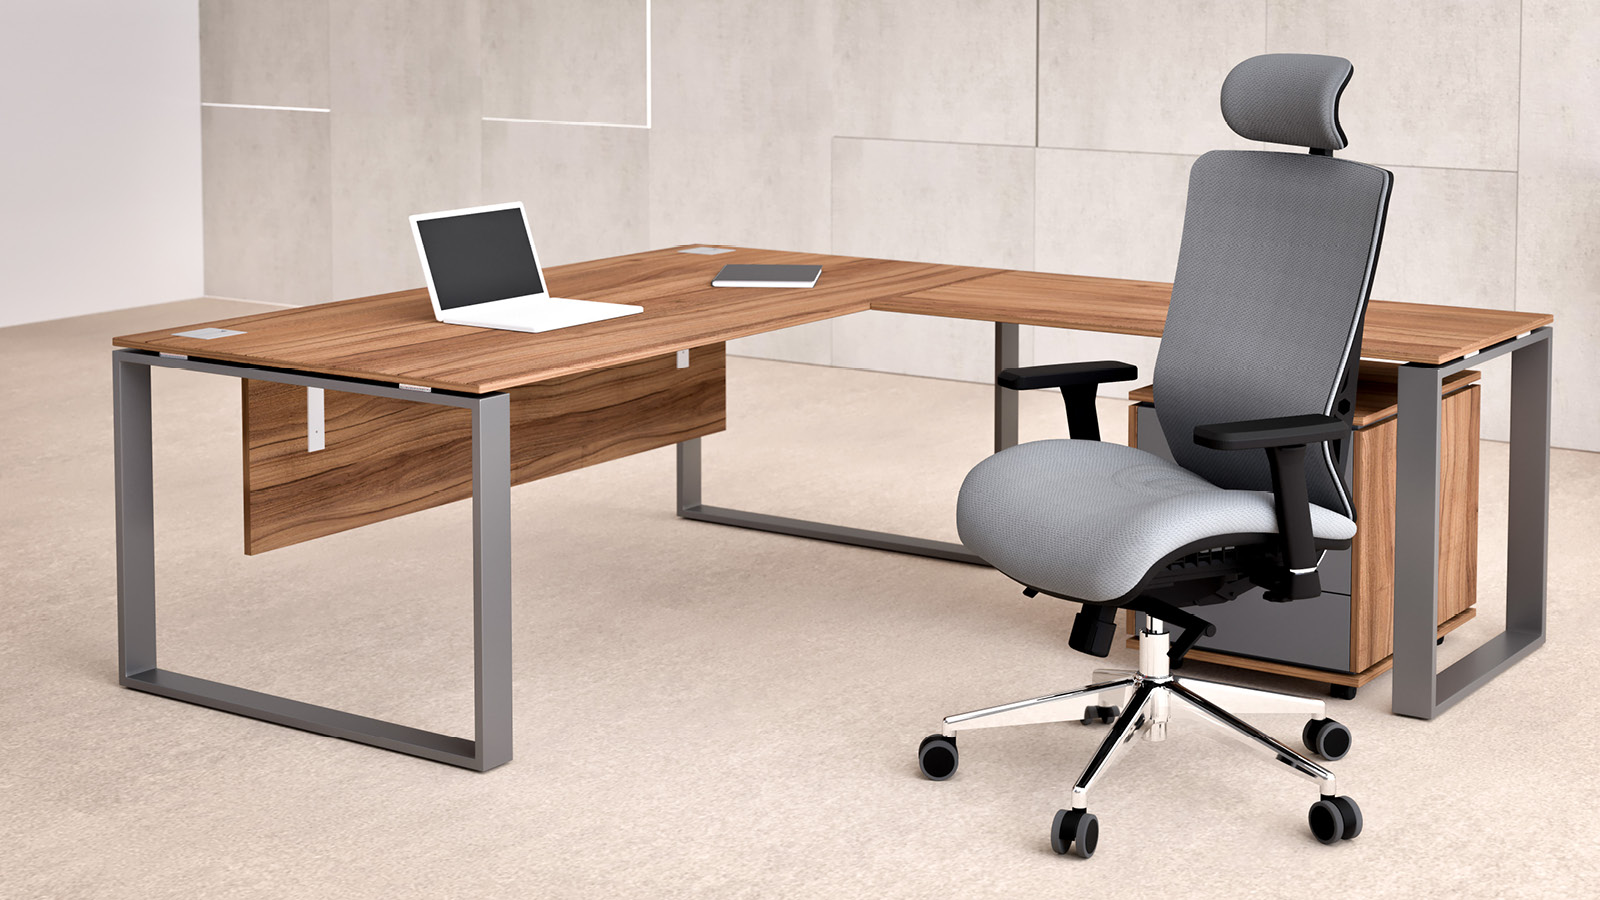 Marmurowa przestrzeń została wyposażona w szare, obrotowe krzesło tapicerowane - umieszczone przy dużym biurku z przystawką.